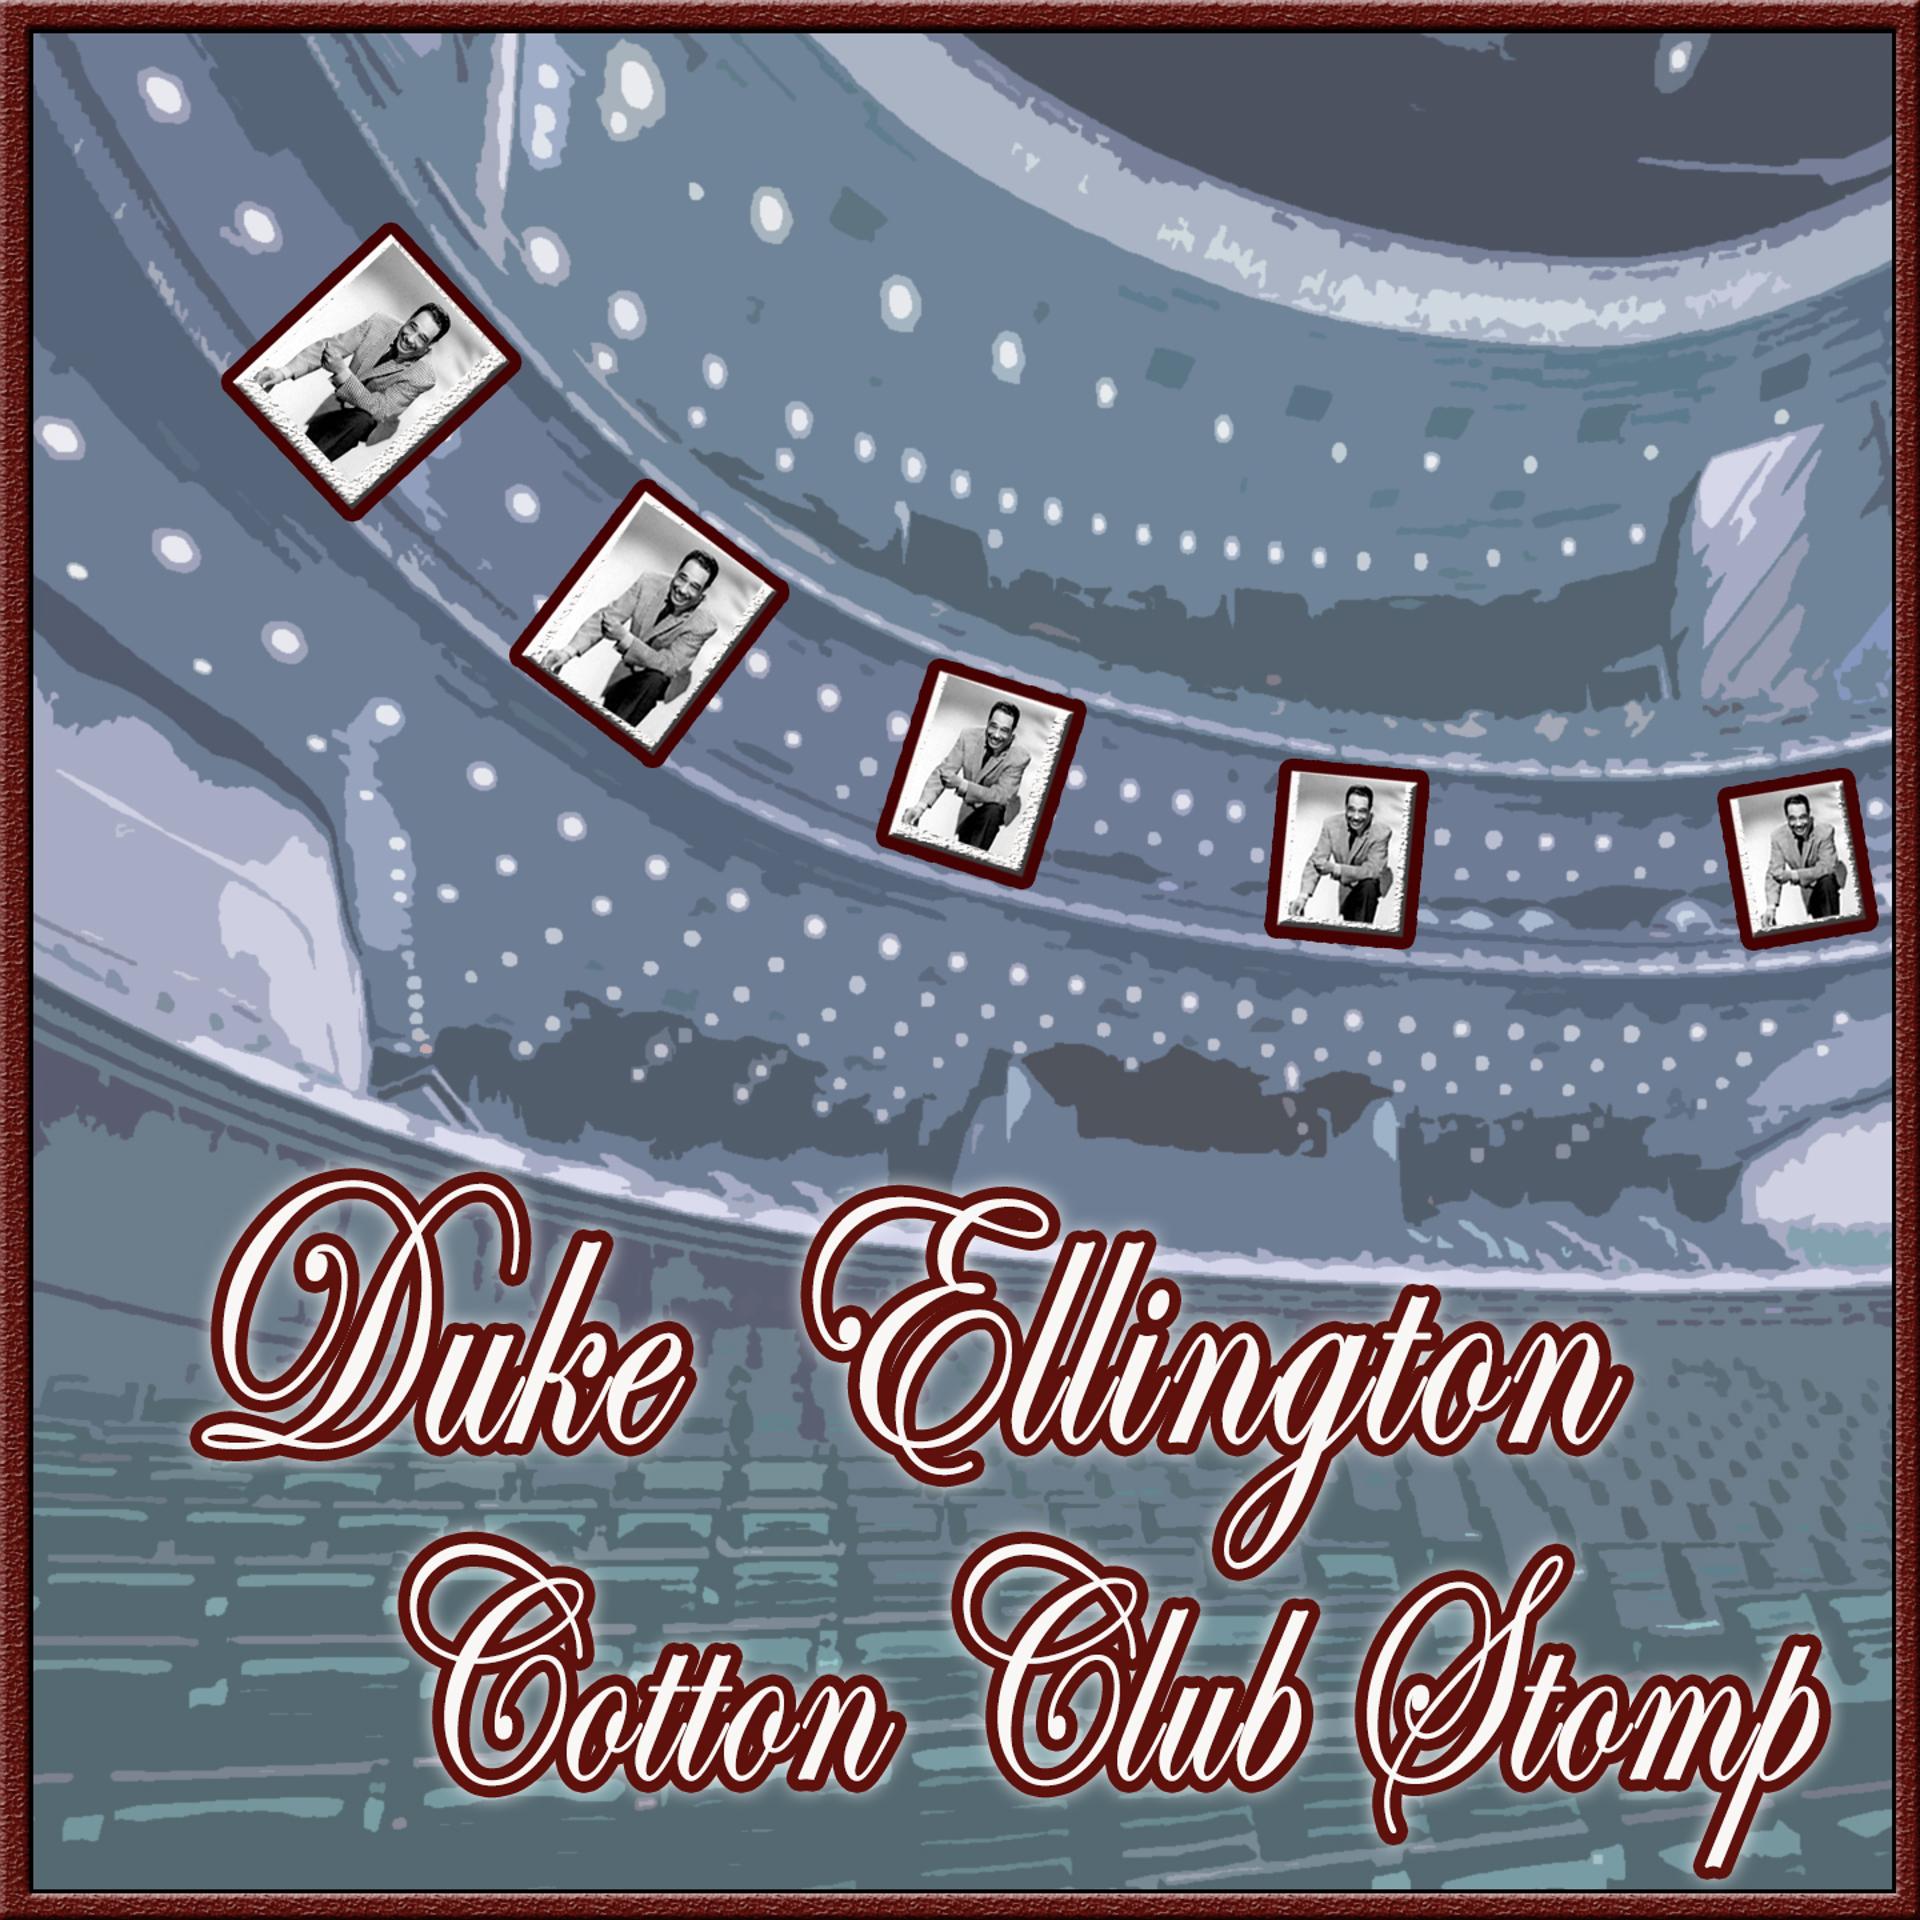 Постер альбома Cotton Club Stomp